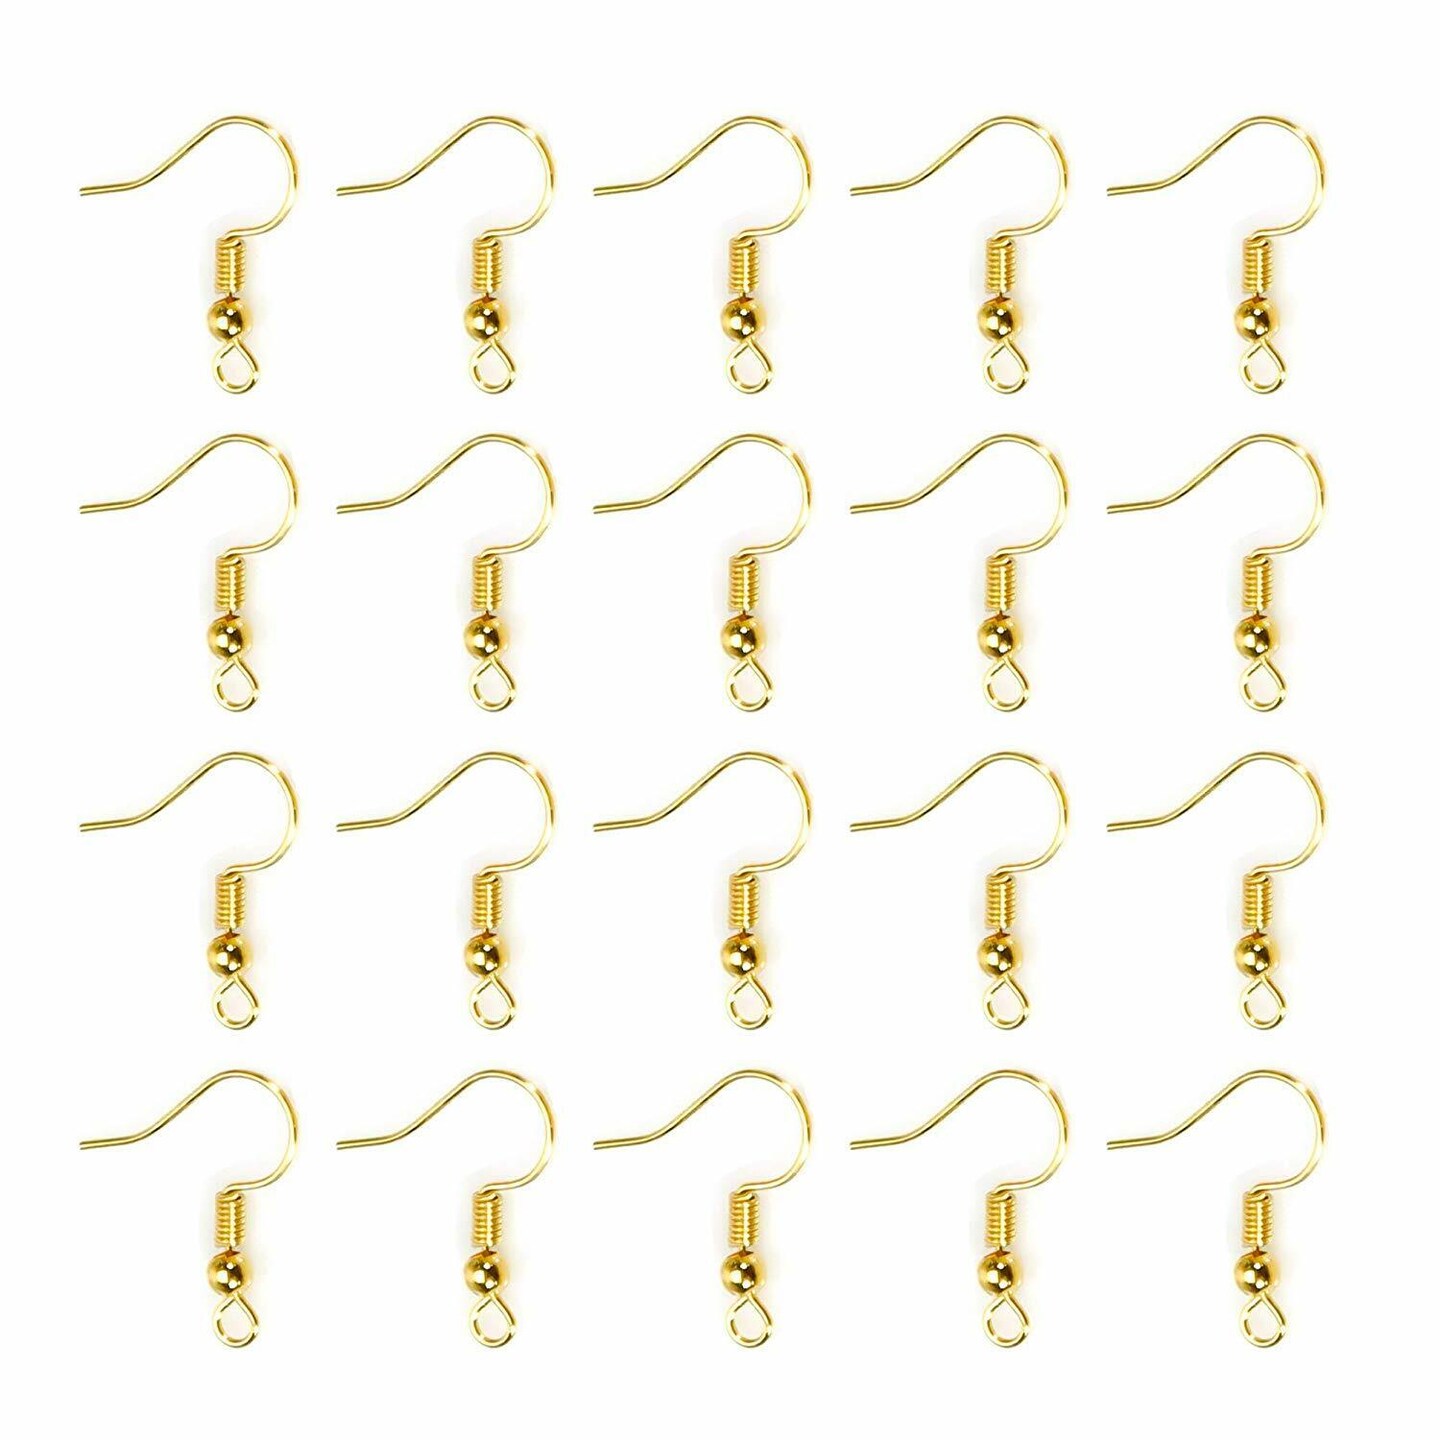 Kitcheniva 200 Pcs DIY Jewelry Making Findings Earring Hook Coil Ear Wire